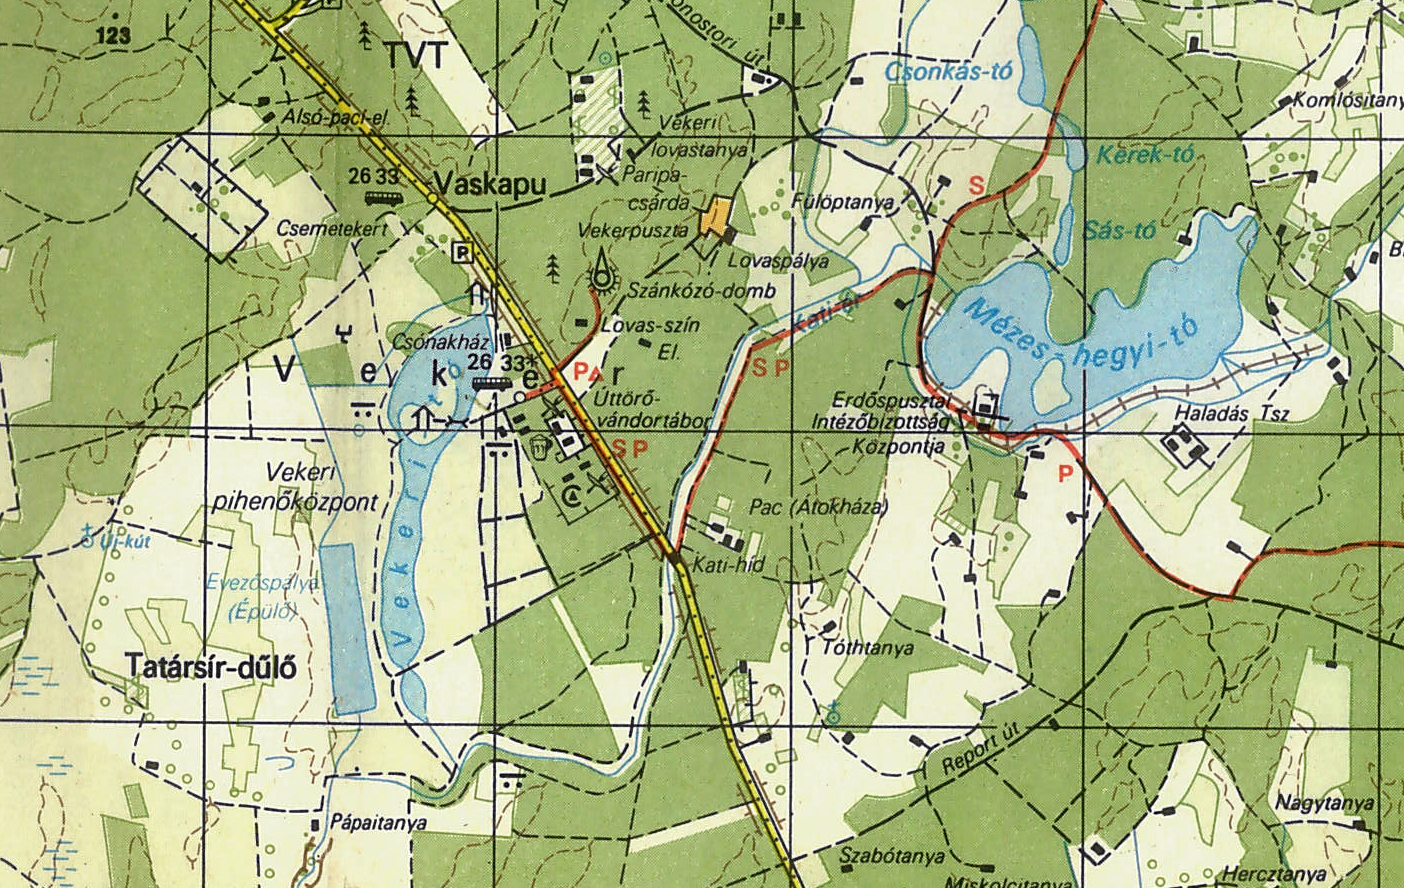 debrecen erdőspuszta térkép Debrecen és környéke   2012.07.15  16. debrecen erdőspuszta térkép